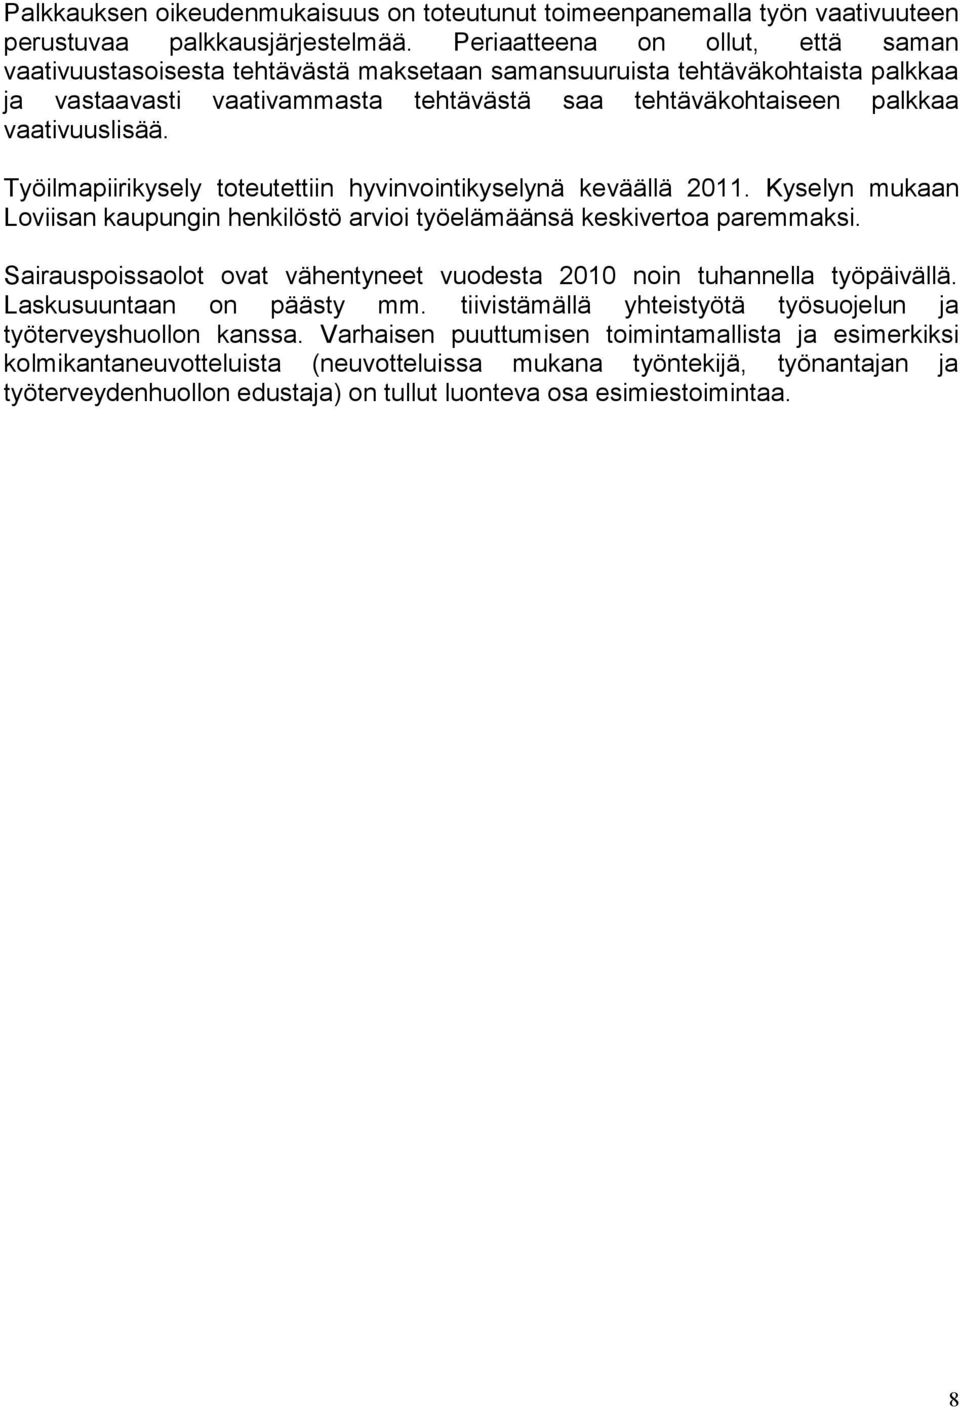 Työilmapiirikysely toteutettiin hyvinvointikyselynä keväällä 2011. Kyselyn mukaan Loviisan kaupungin henkilöstö arvioi työelämäänsä keskivertoa paremmaksi.